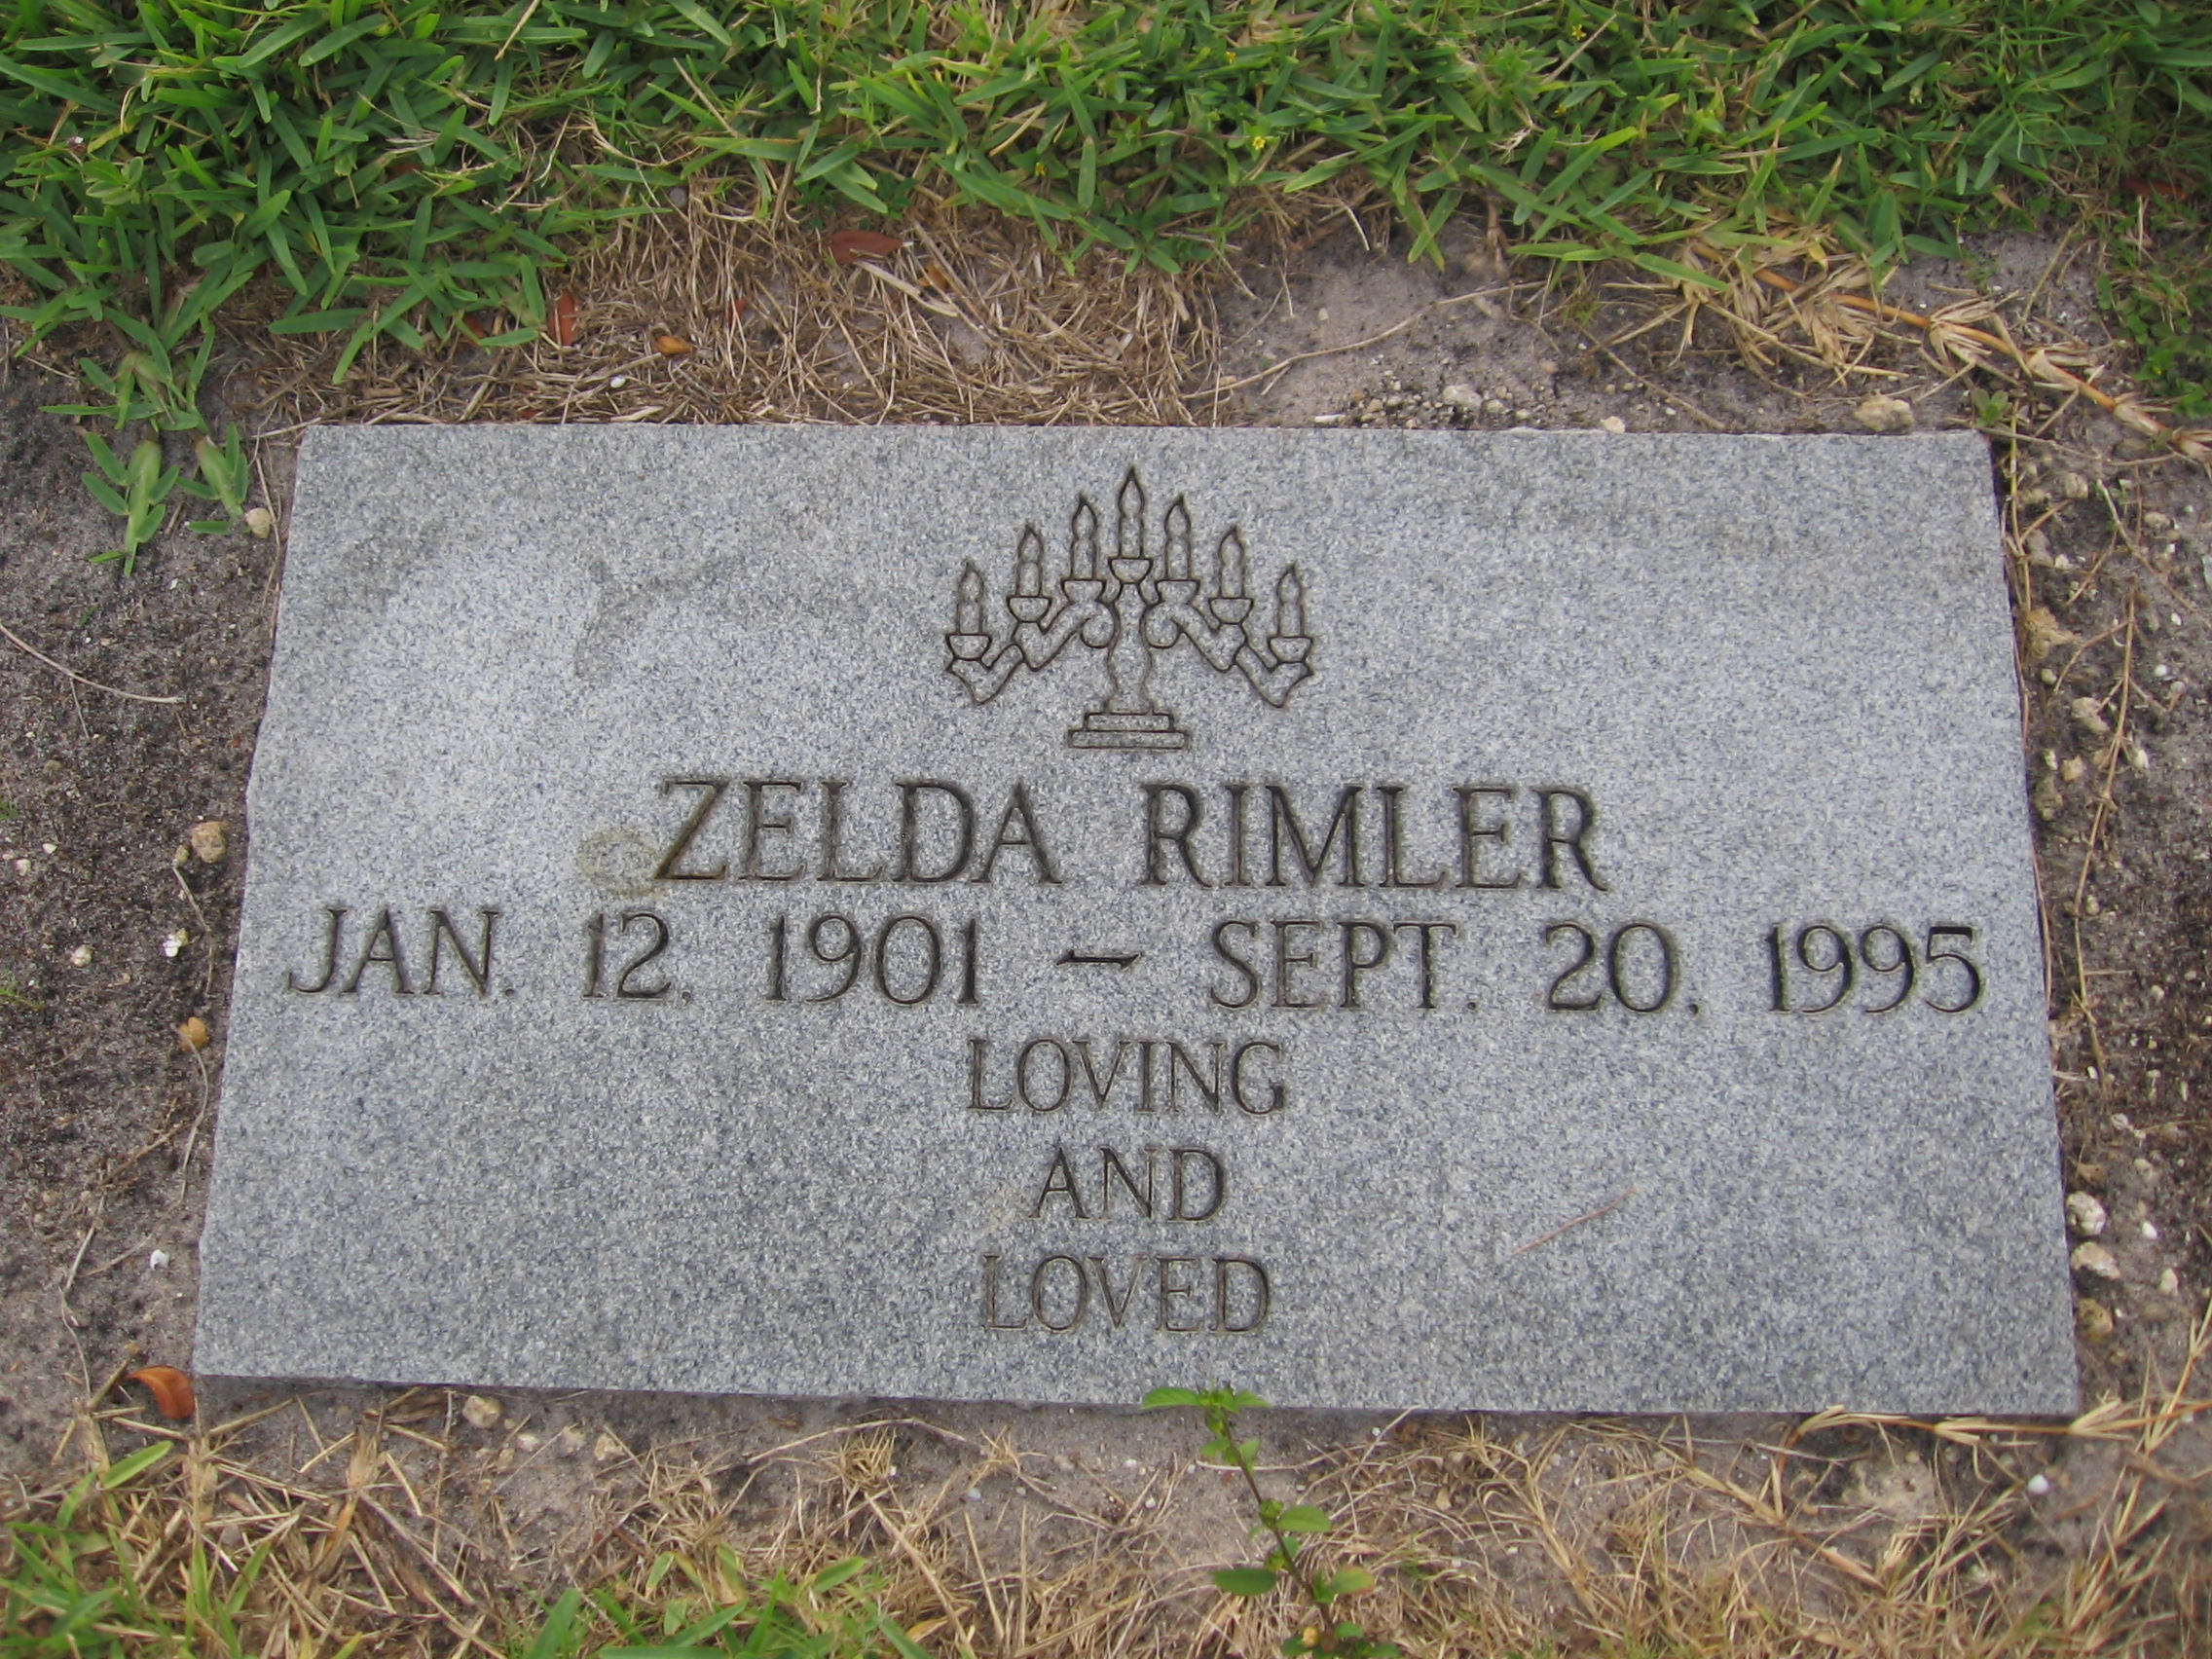 Zelda Rimler